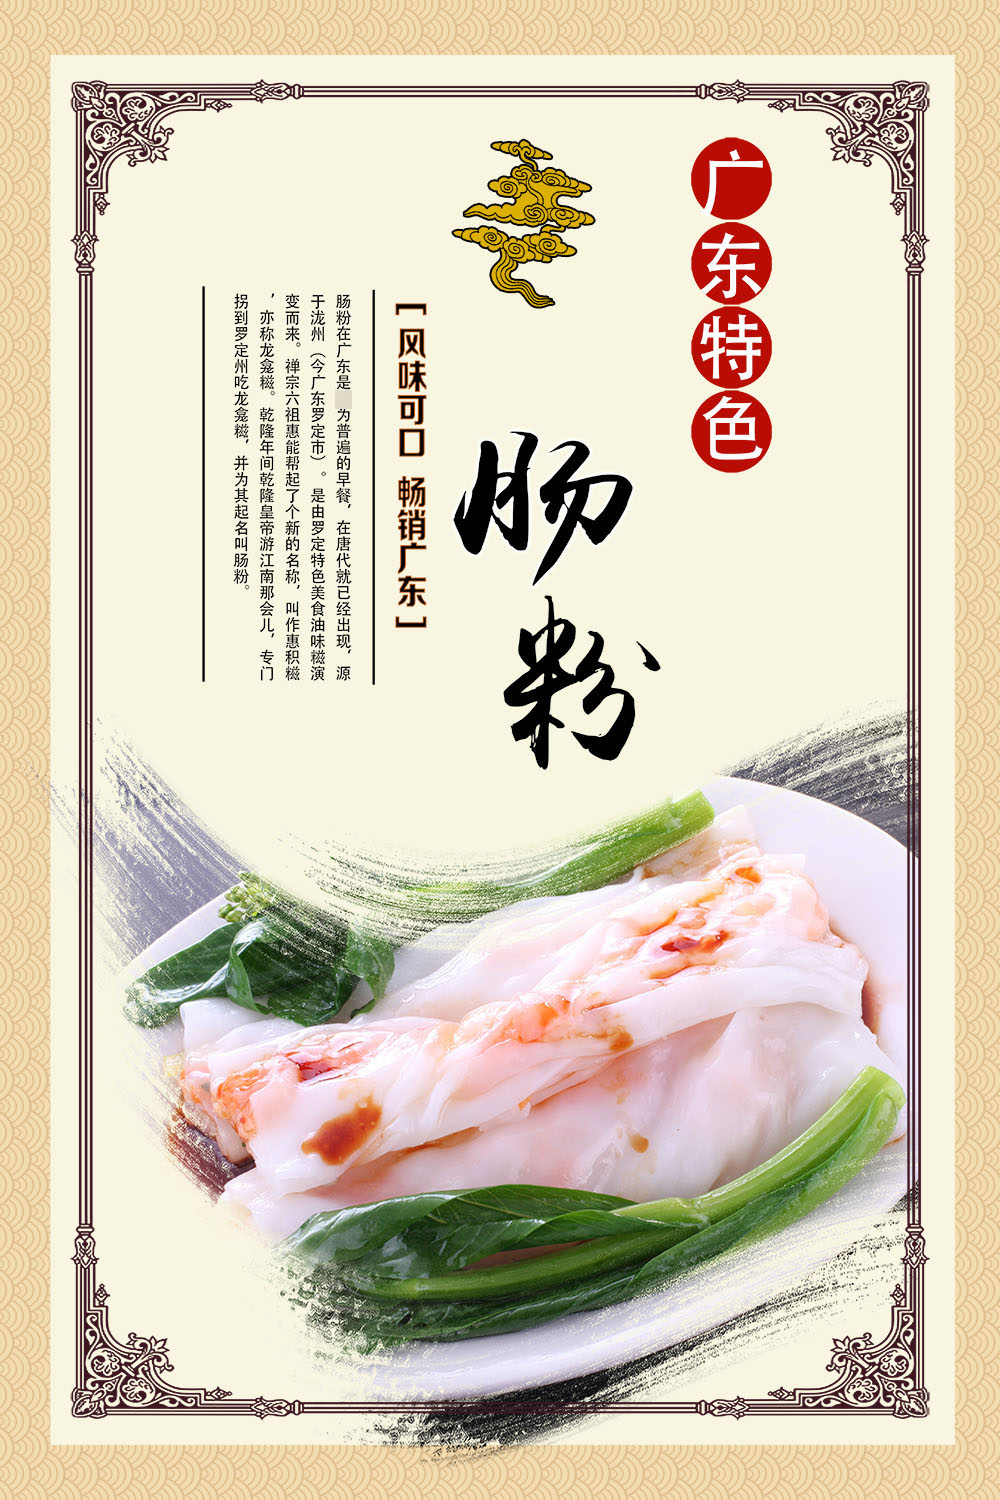 767写真海报印制展板喷绘贴纸素材585广东美食早餐店猪肠粉宣传画